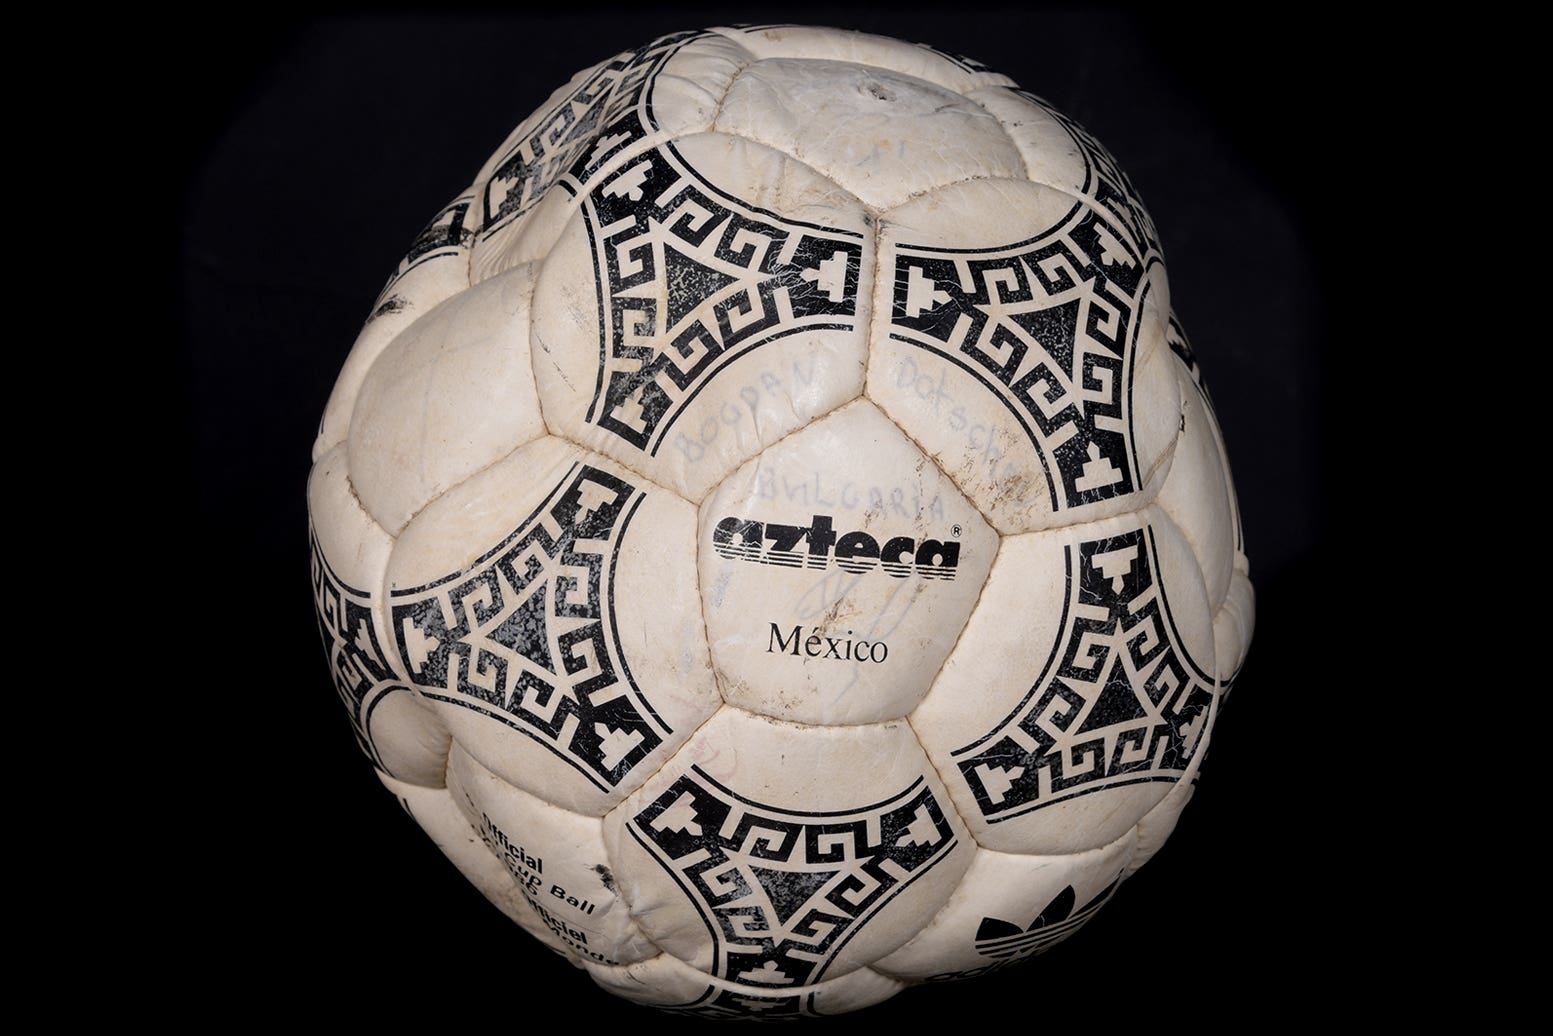 El balón de la “Mano de Dios” de Maradona saldrá a subasta el miércoles 16 de noviembre (Graham Budd Auctions/PA)